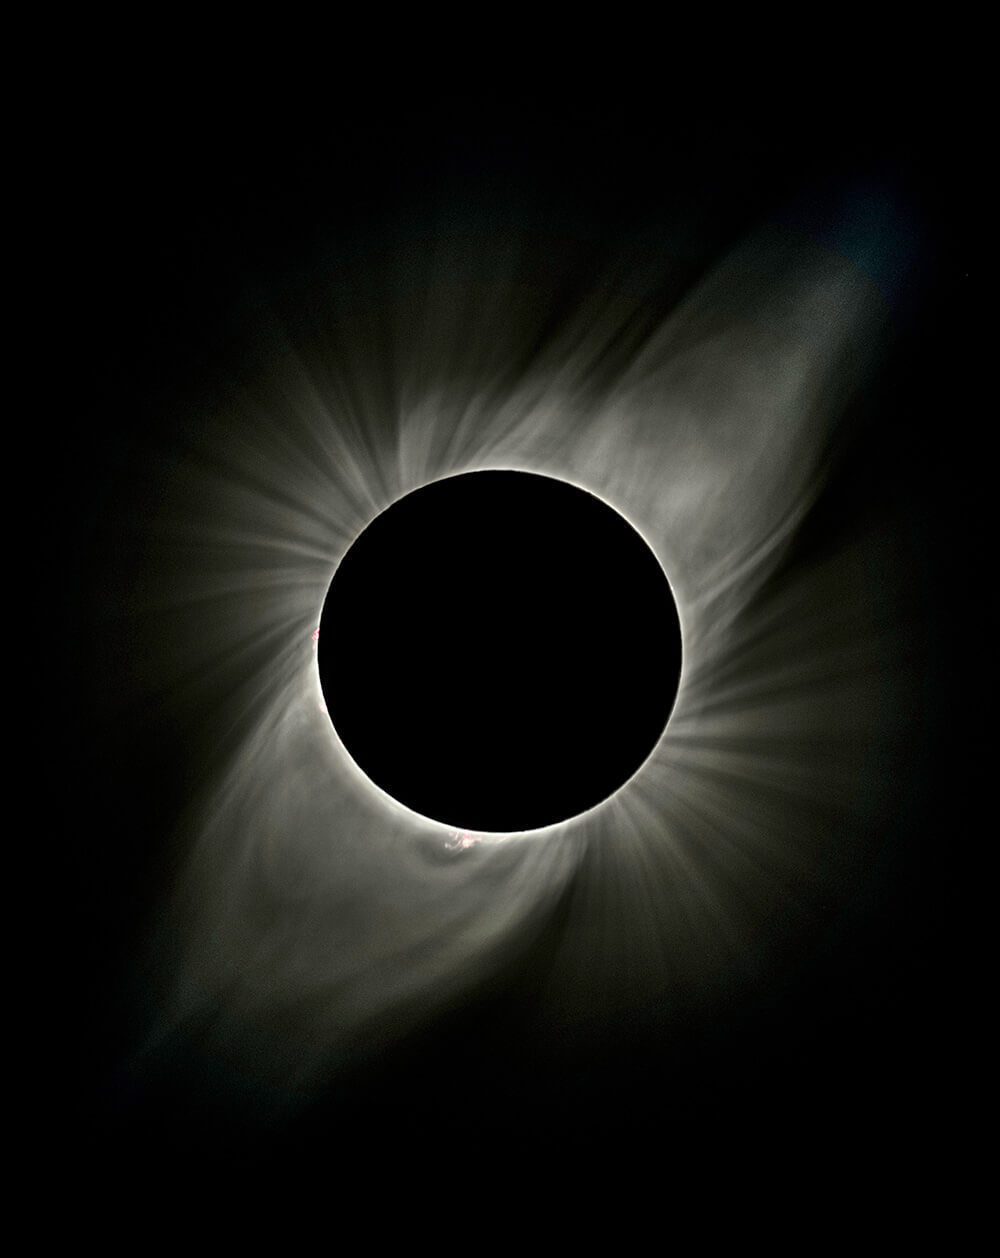 Eclipse solar diciembre 2020 en Chile: todas las consideraciones para observar el gran evento astronómico